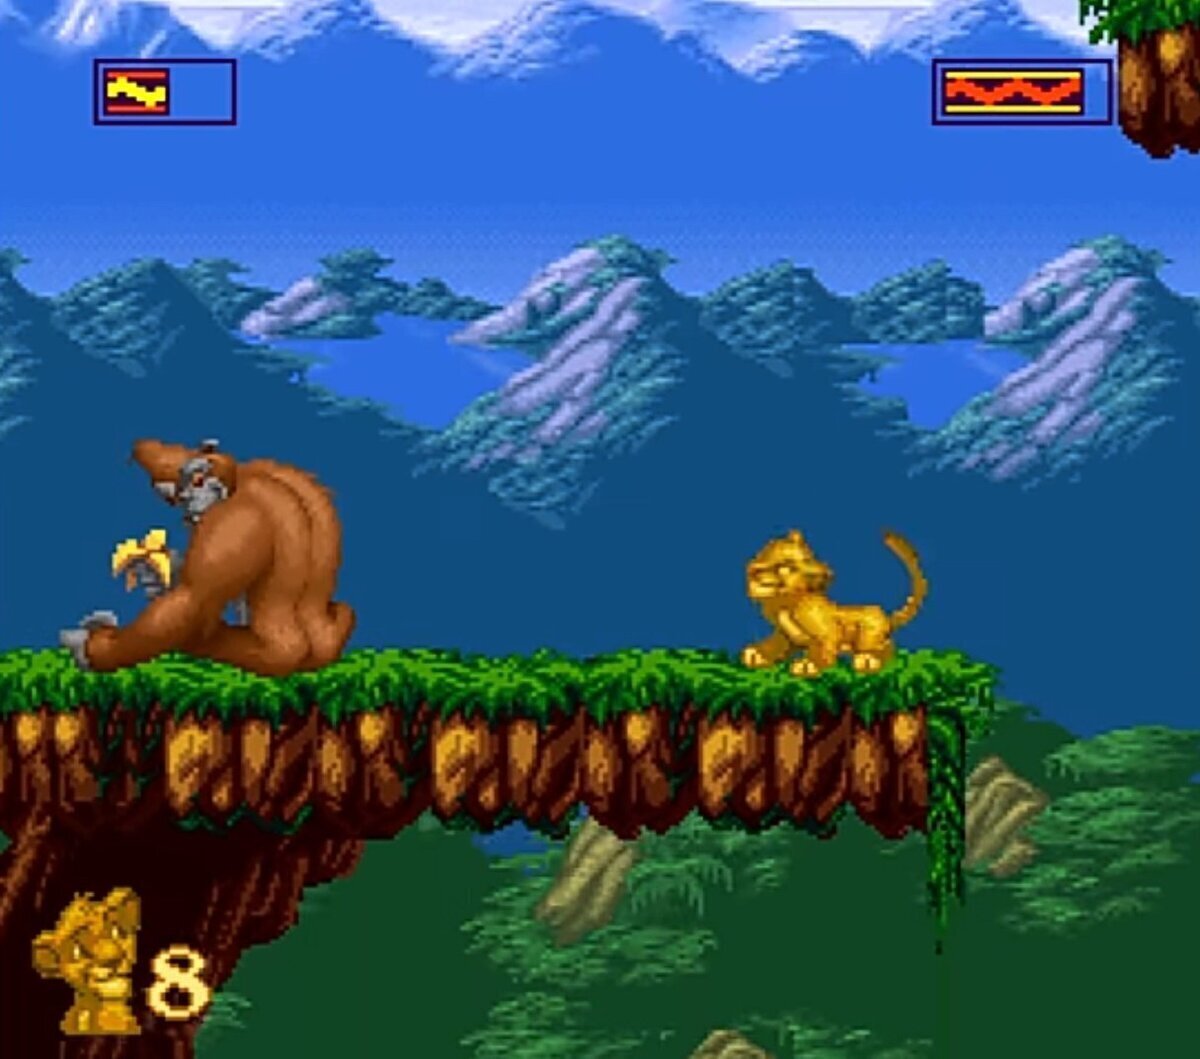 ¿Esta imagen de El Rey León pertenece a...¿Super Nintendo o a Mega Drive?